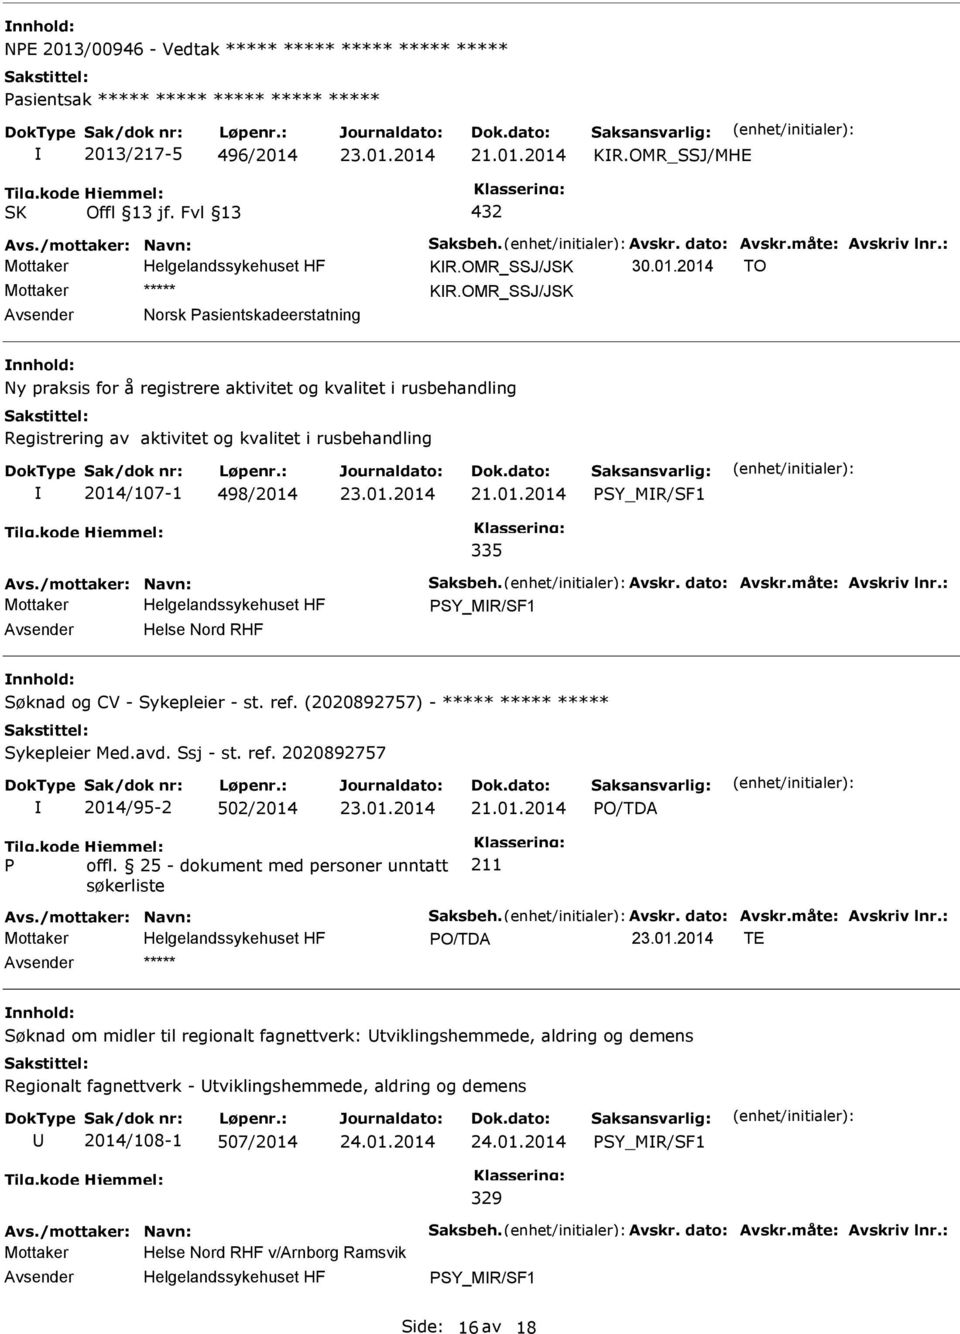 OMR_SSJ/JSK Norsk asientskadeerstatning nnhold: Ny praksis for å registrere aktivitet og kvalitet i rusbehandling Registrering av aktivitet og kvalitet i rusbehandling 2014/107-1 498/2014 SY_MR/SF1